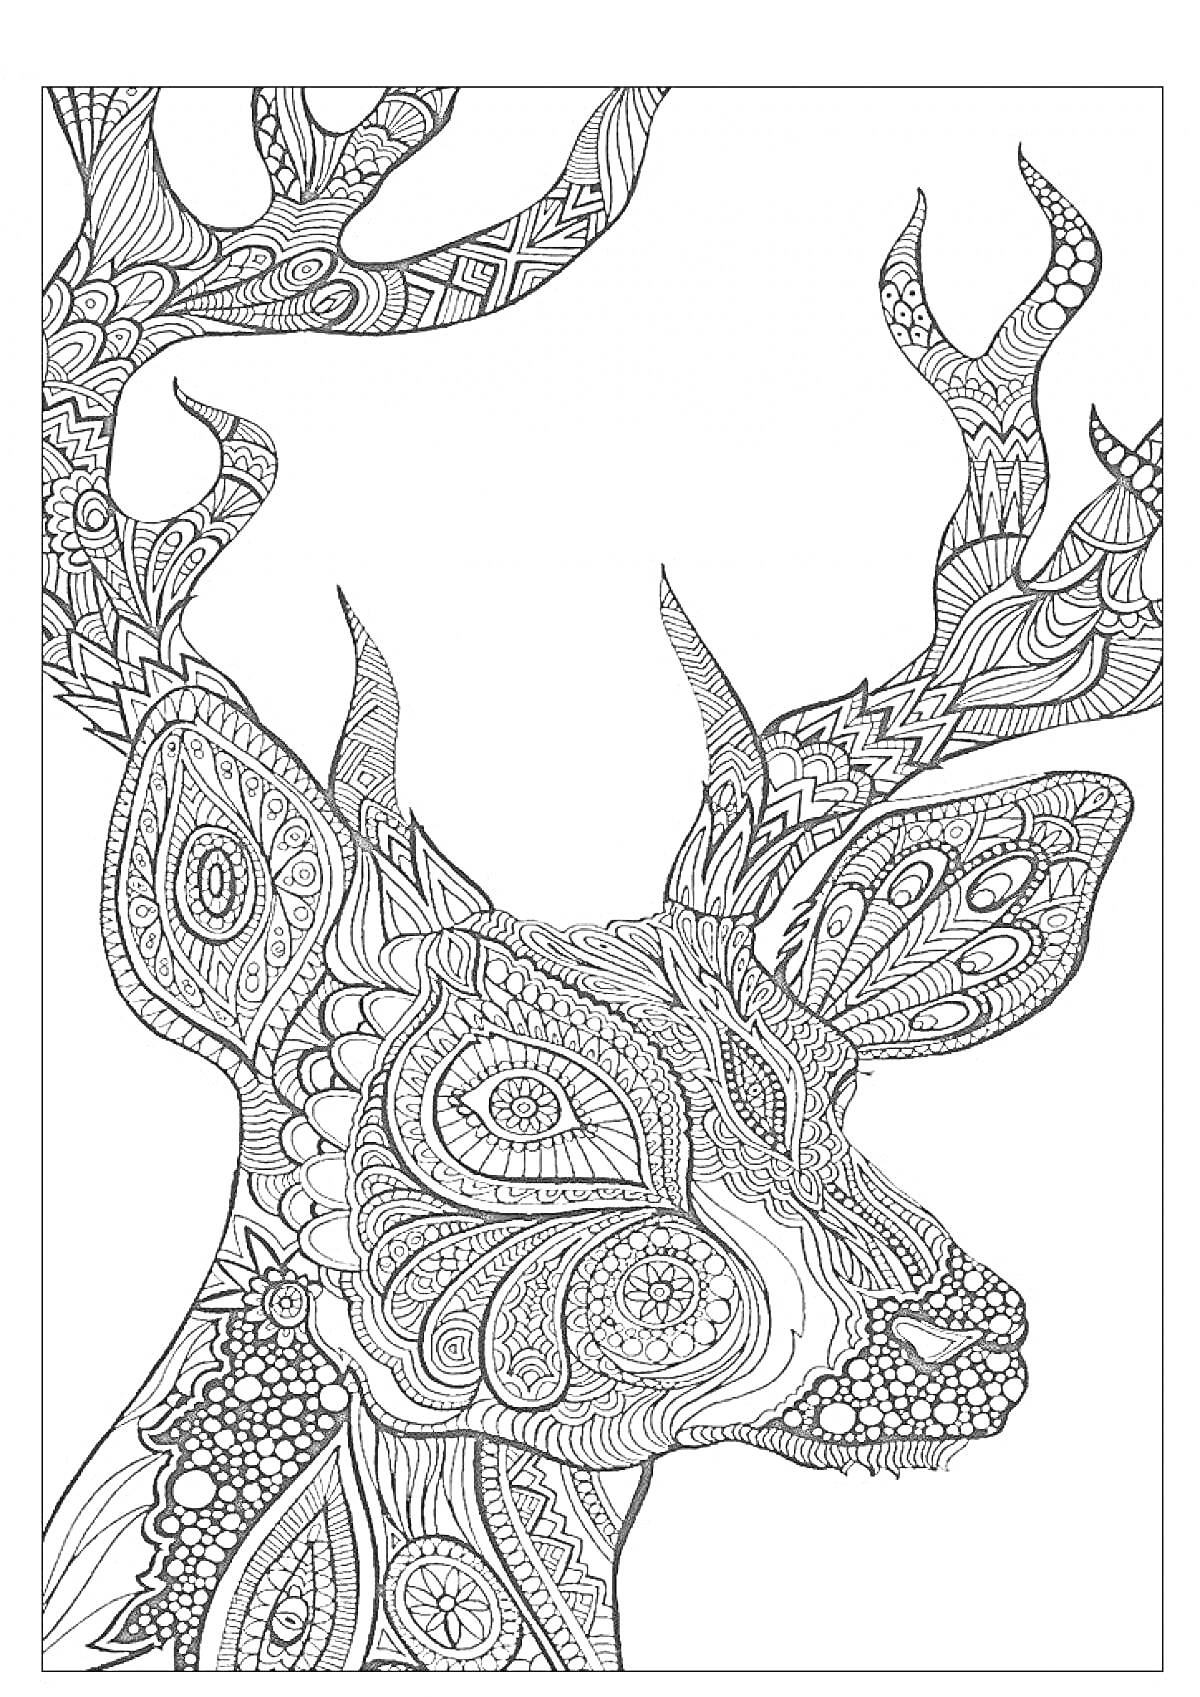 Антистресс расцветка с оленем, детализация включает сложные узоры и орнаменты на рогах, голове и шее животного